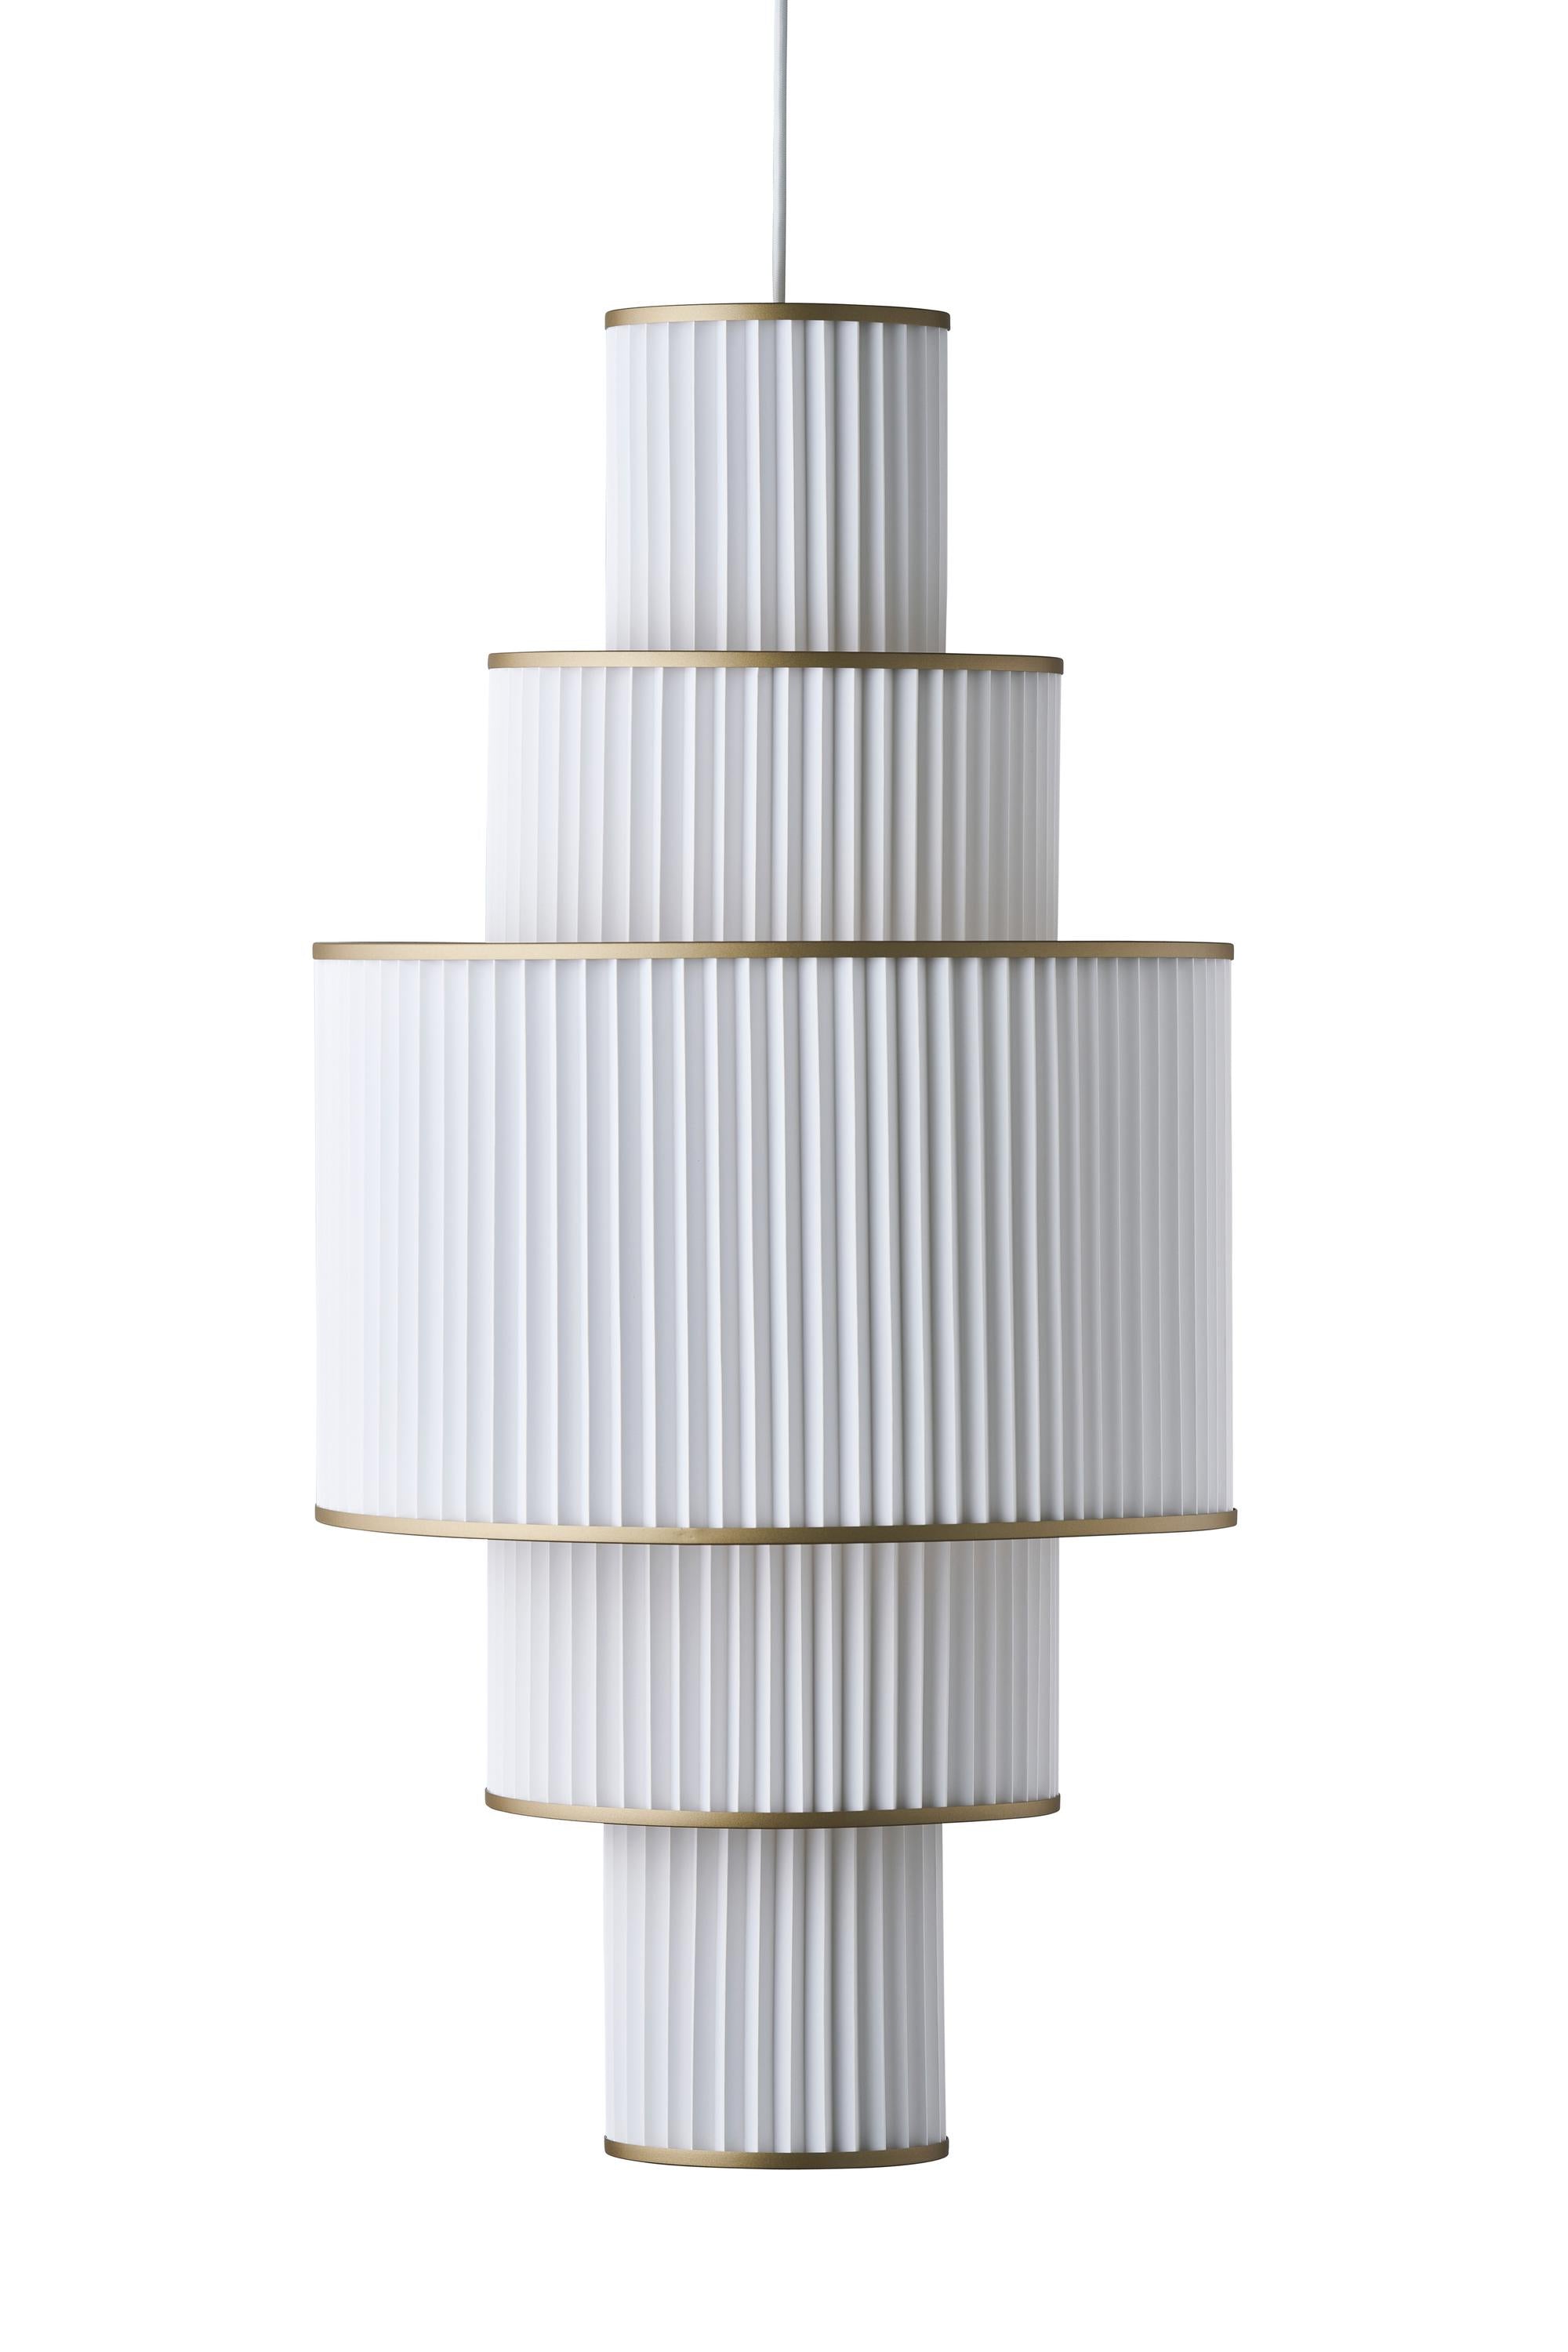 Le Klint Plivello -Suspensionslampe golden/weiß mit 5 Schattierungen (S m l m s)